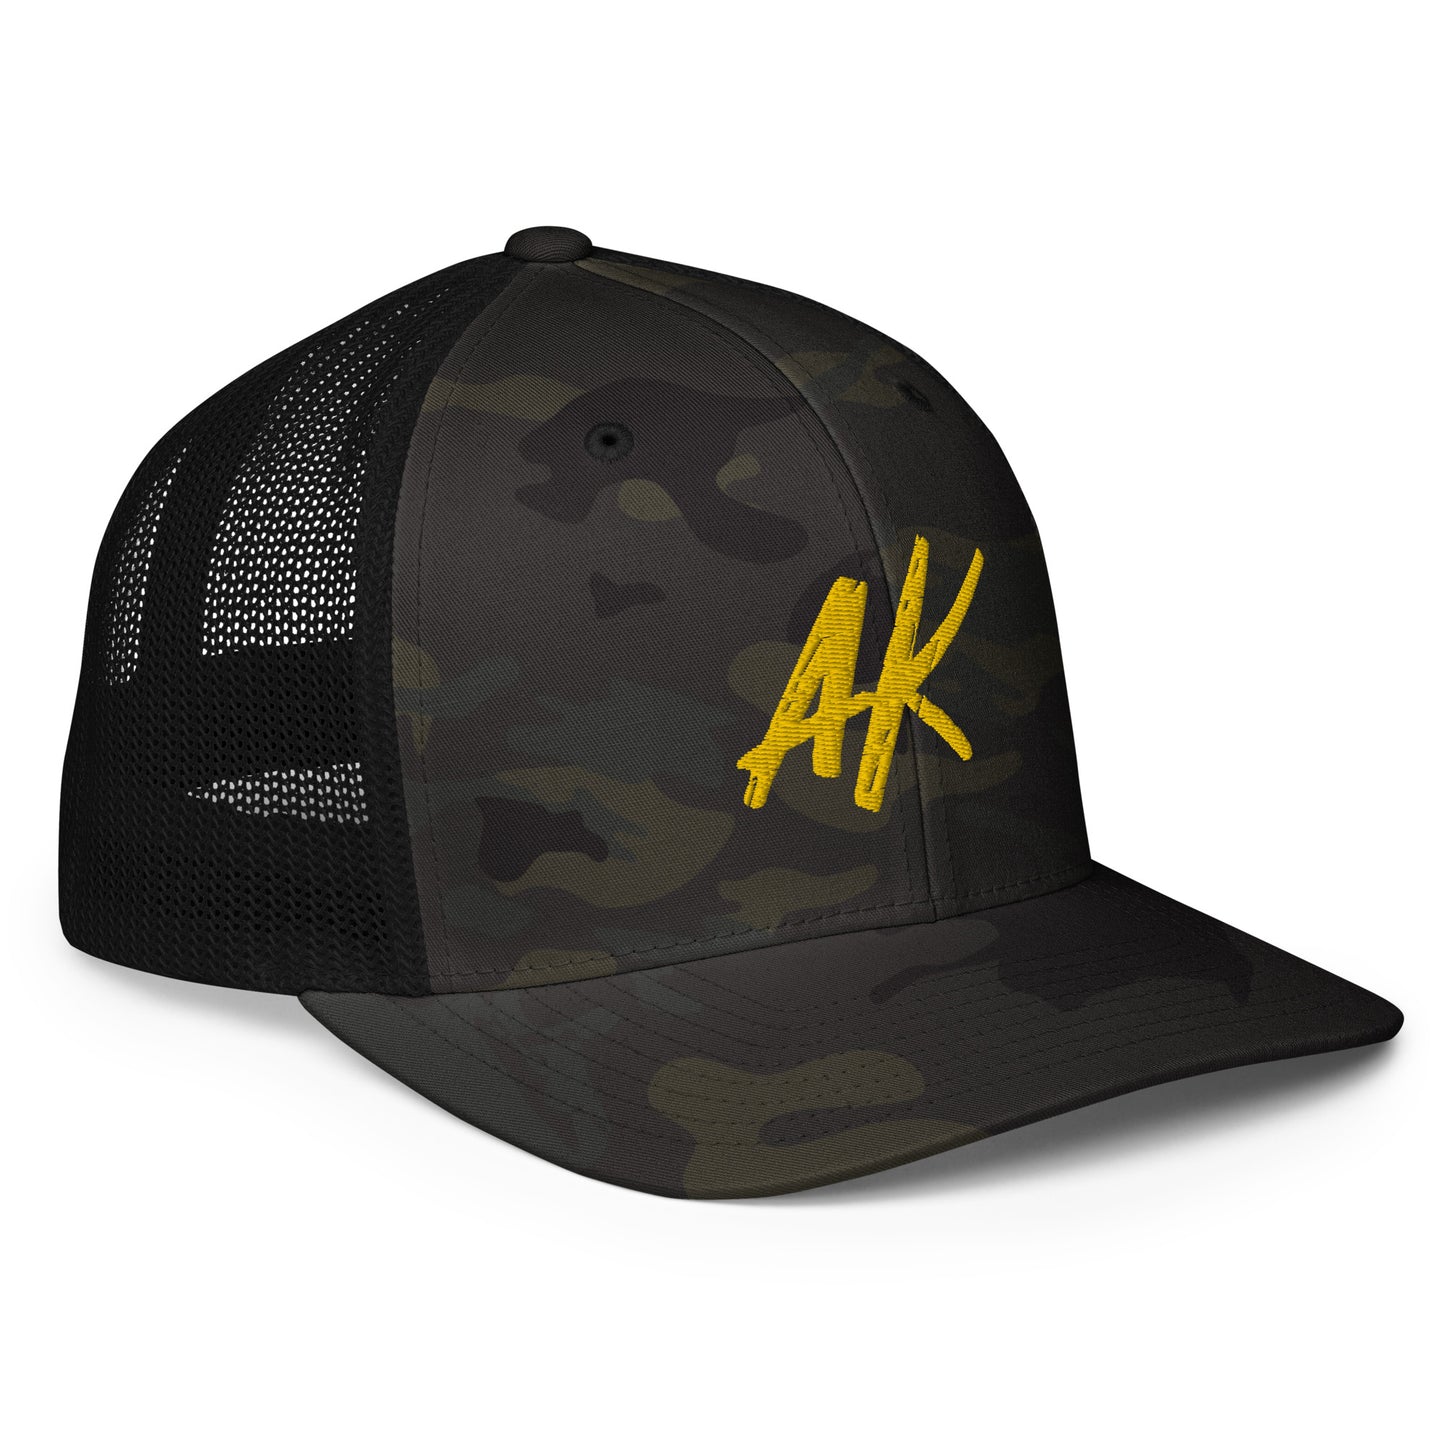 AK Closed-Back Trucker Cap (gold)